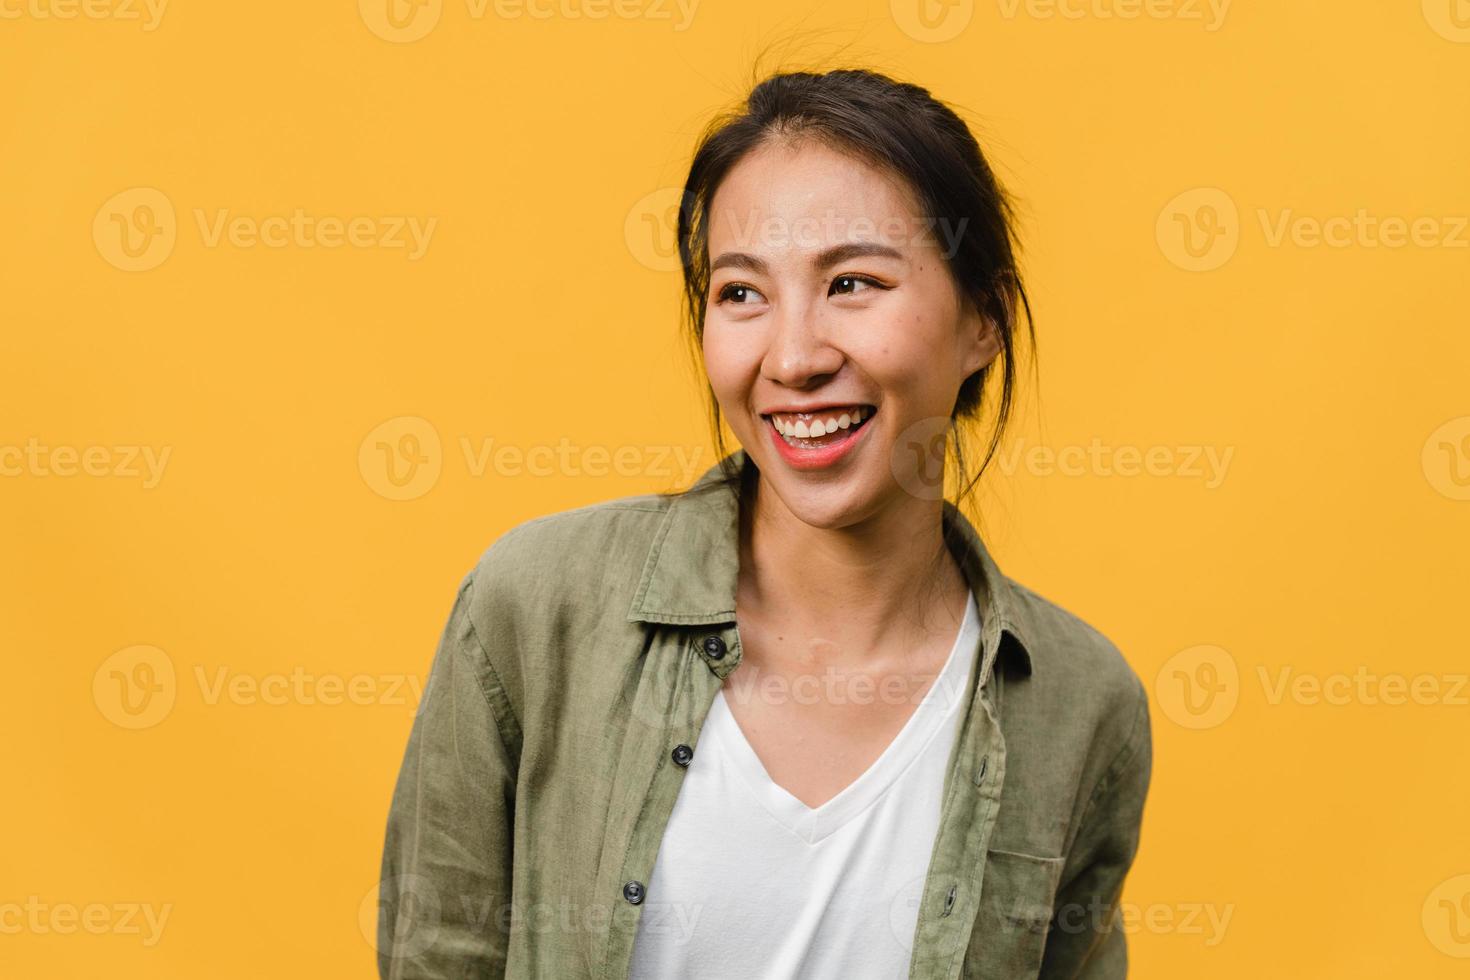 Retrato de joven asiática con expresión positiva, sonrisa amplia, vestida con ropa casual sobre fondo amarillo. feliz adorable mujer alegre se regocija con el éxito. concepto de expresión facial. foto